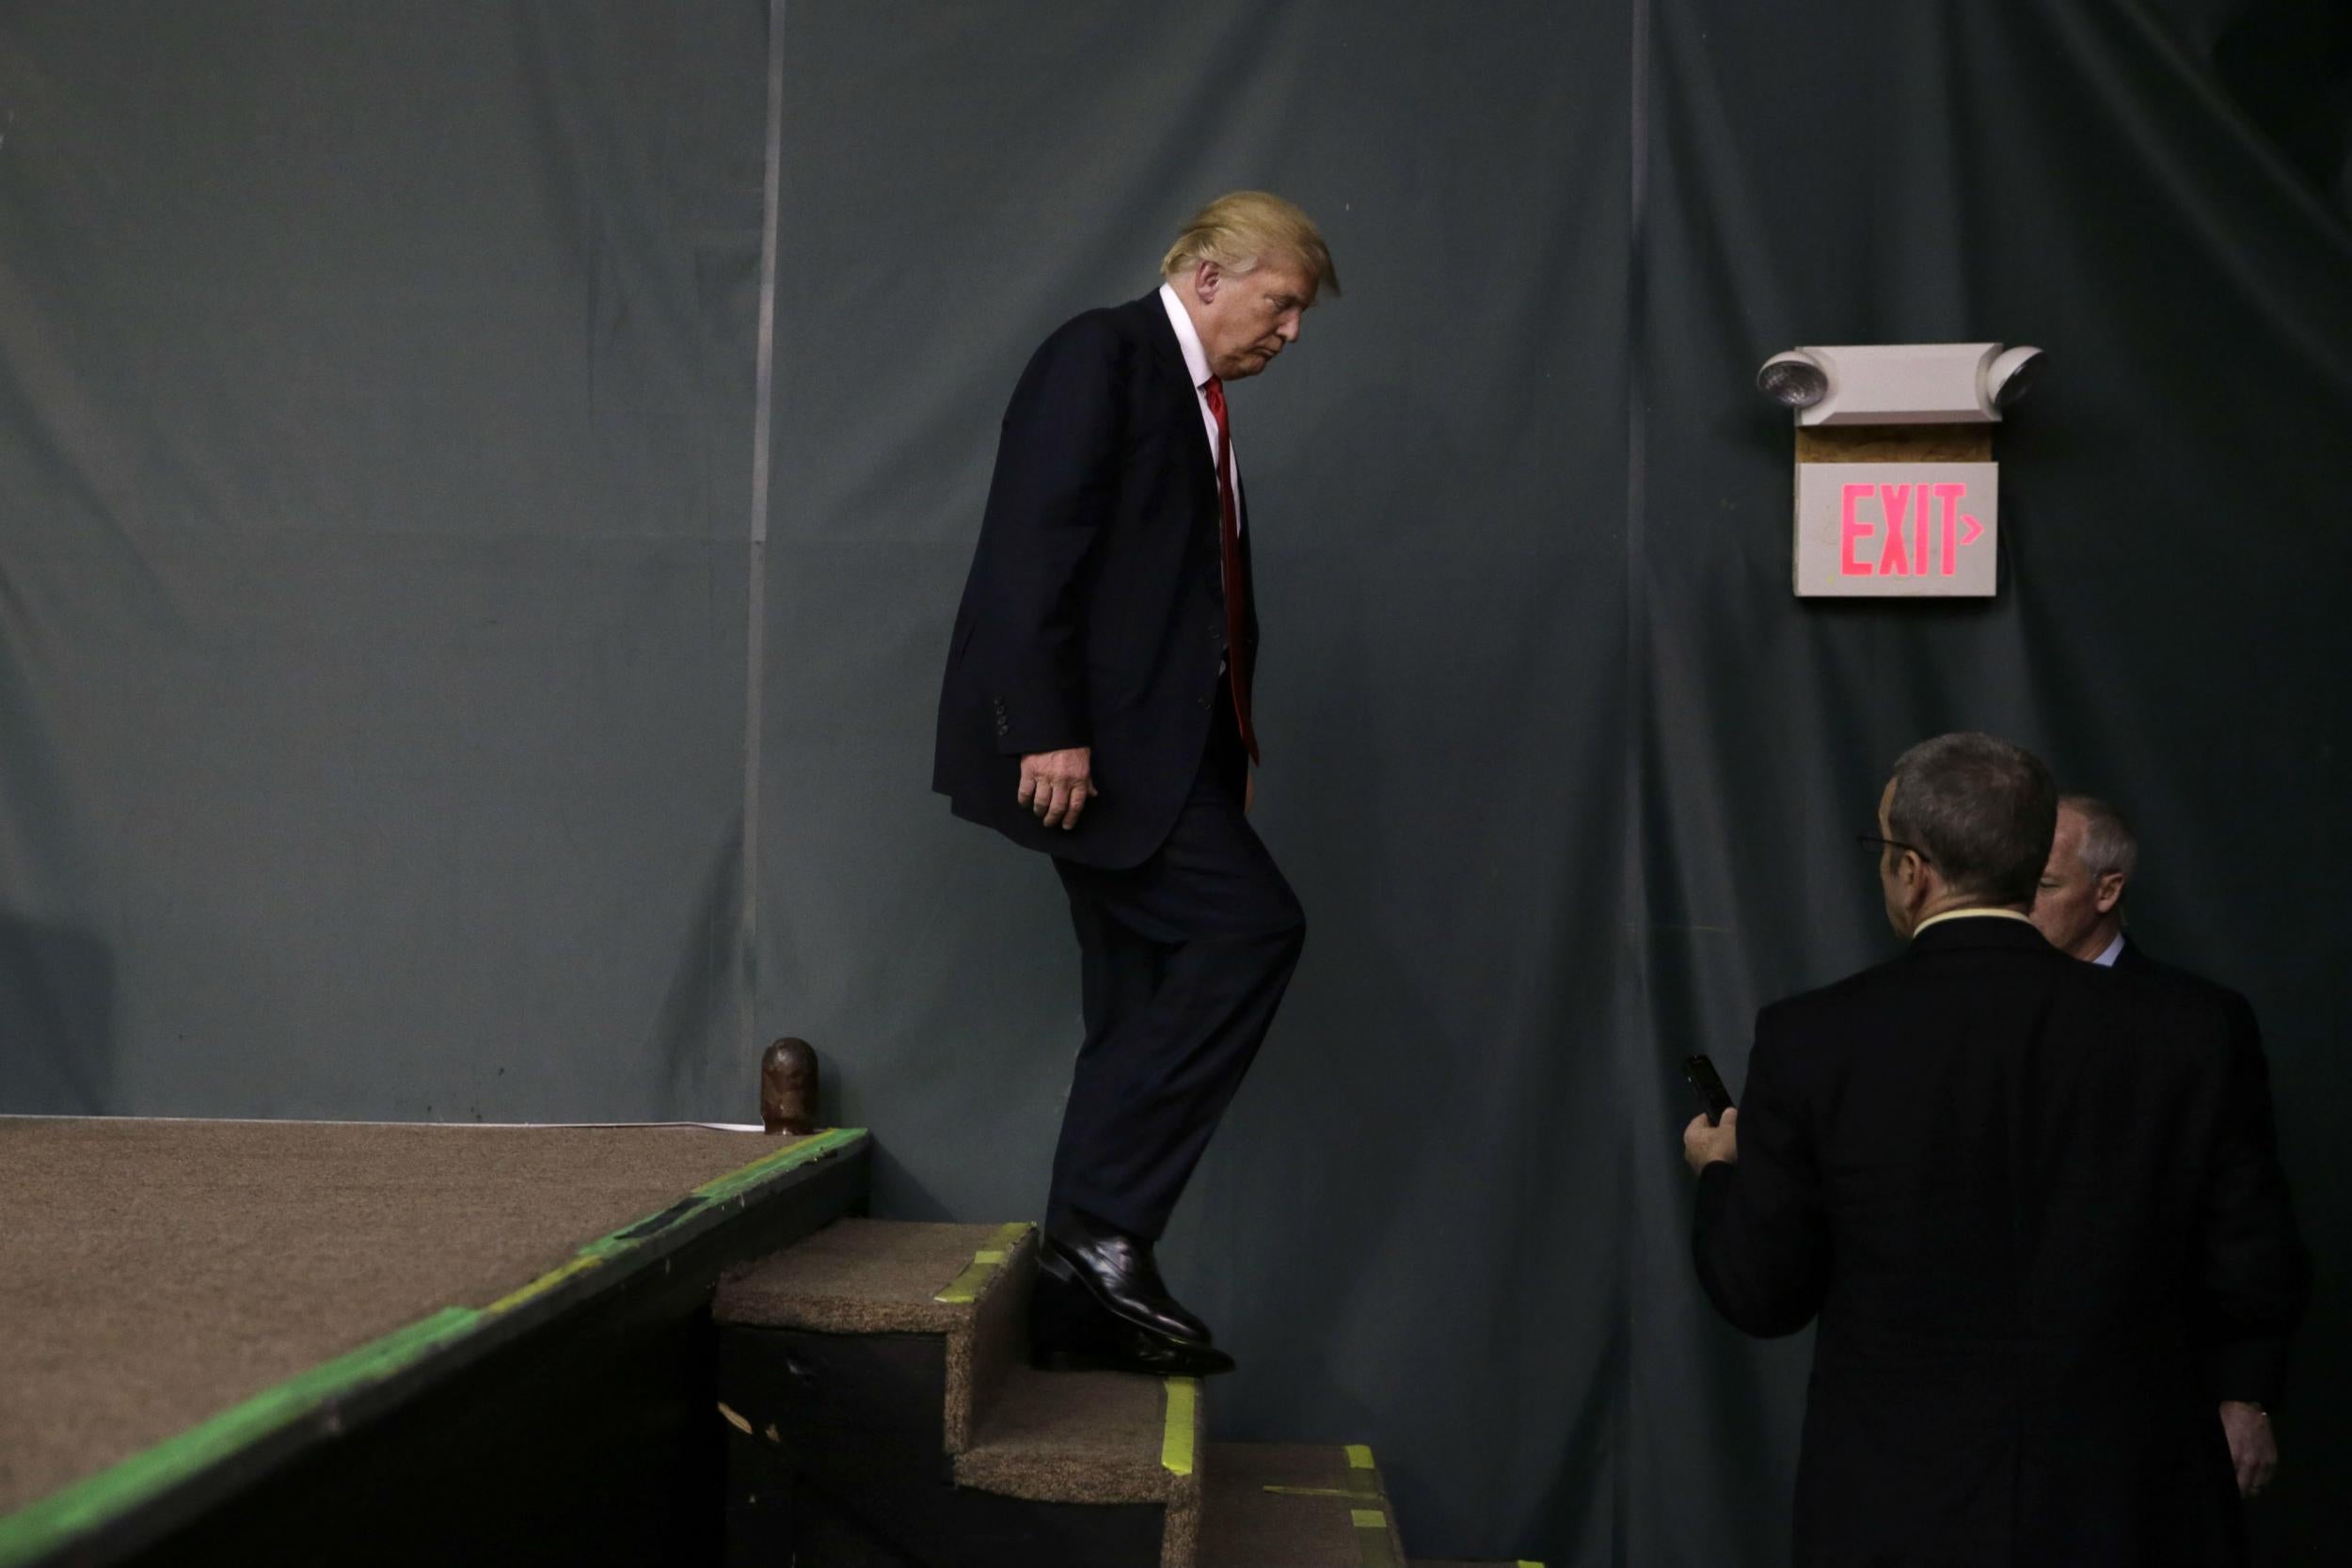 Donald Trump campaigned hard in Iowa